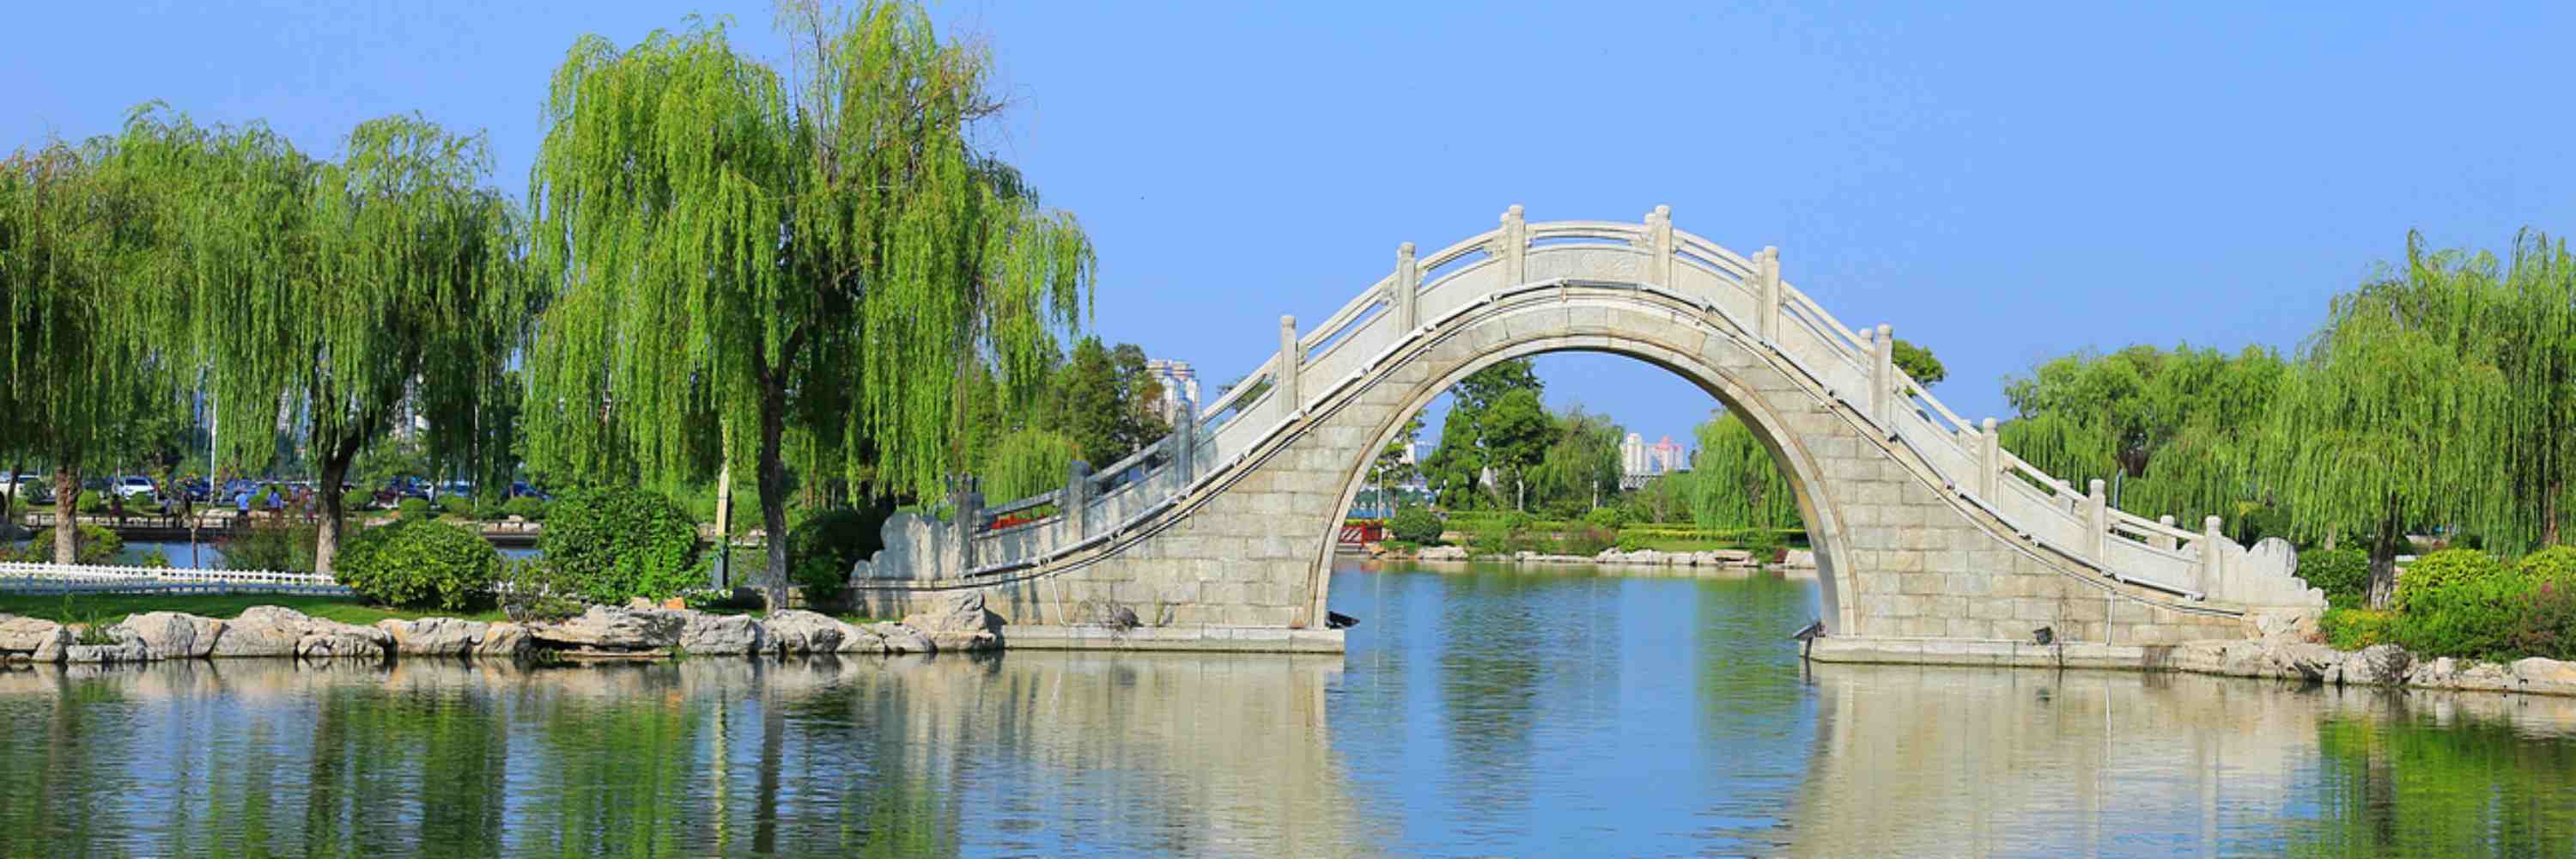 China Jiangsu tour Packages